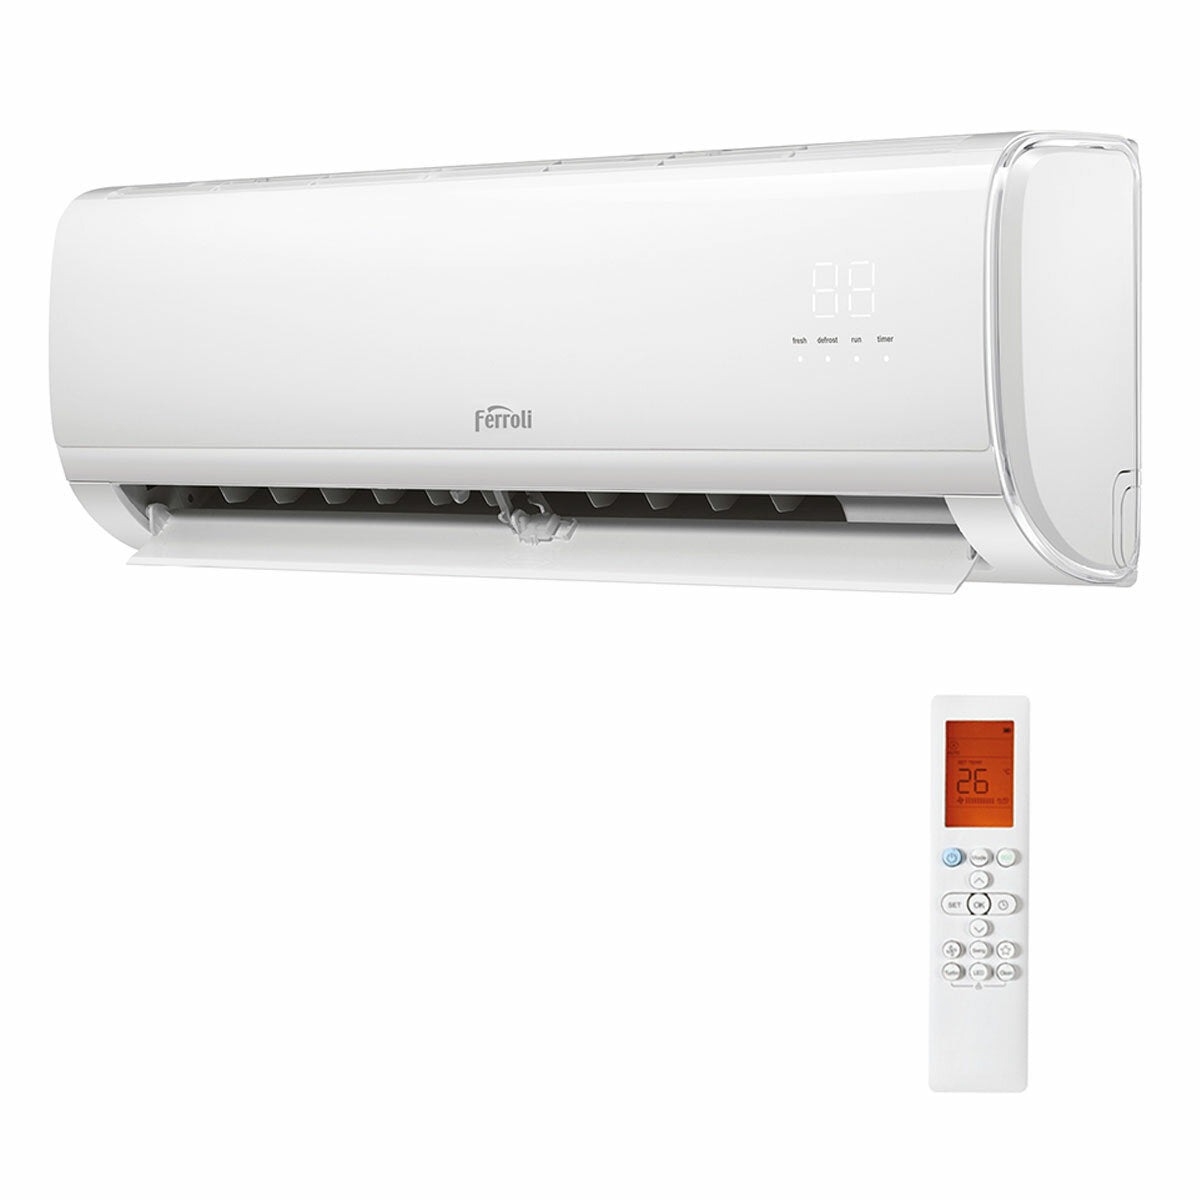 Ferroli Giada trial split air conditioner 9000+12000+12000 BTU inverter A+ wifi outdoor unit 7.9 kW